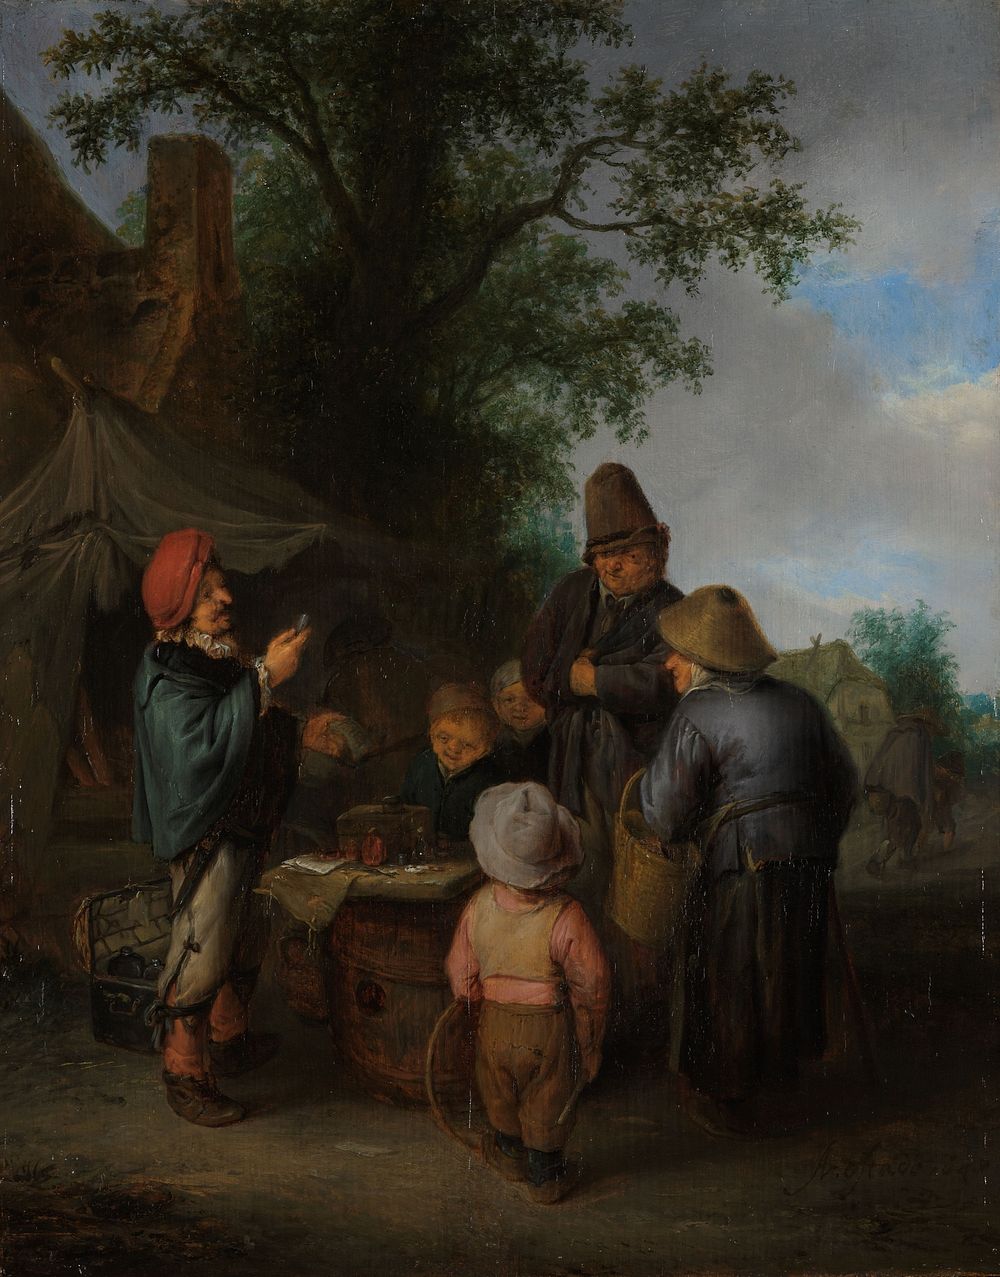 The Quacksalver (1648) by Adriaen van Ostade